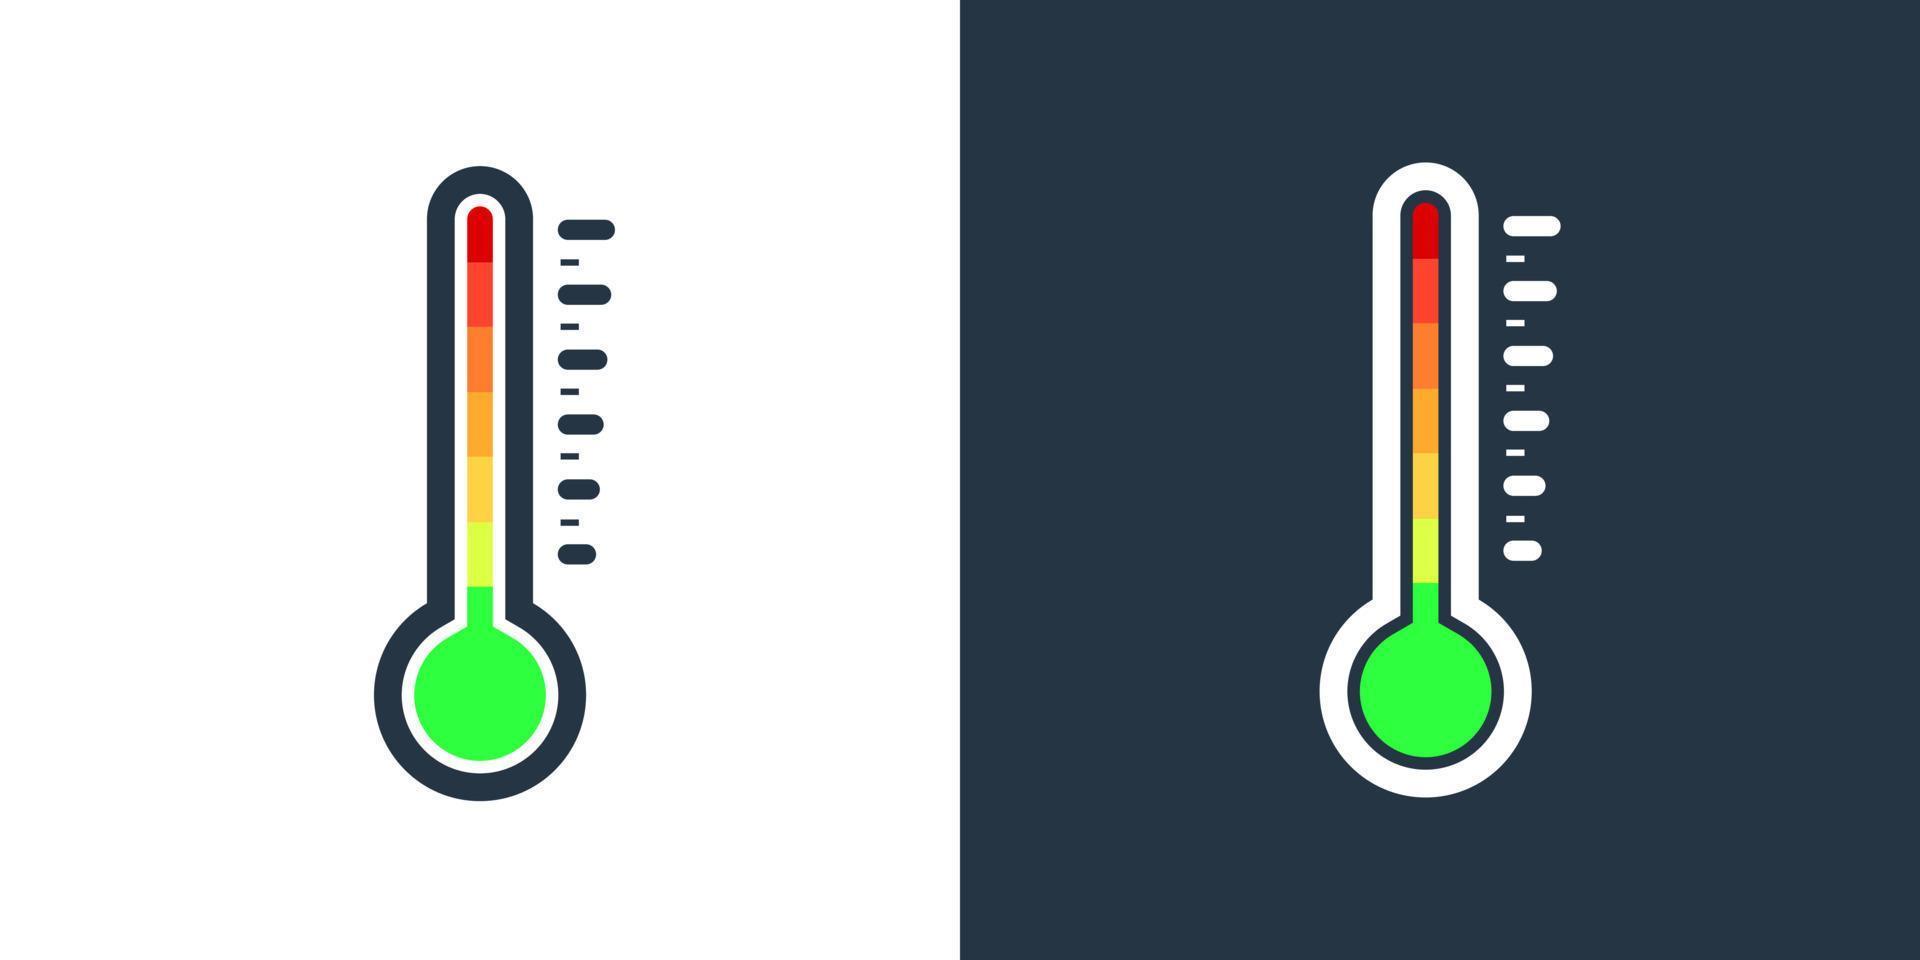 termometro che misura la temperatura calda e fredda. scala di temperatura dal verde al rosso. vettore